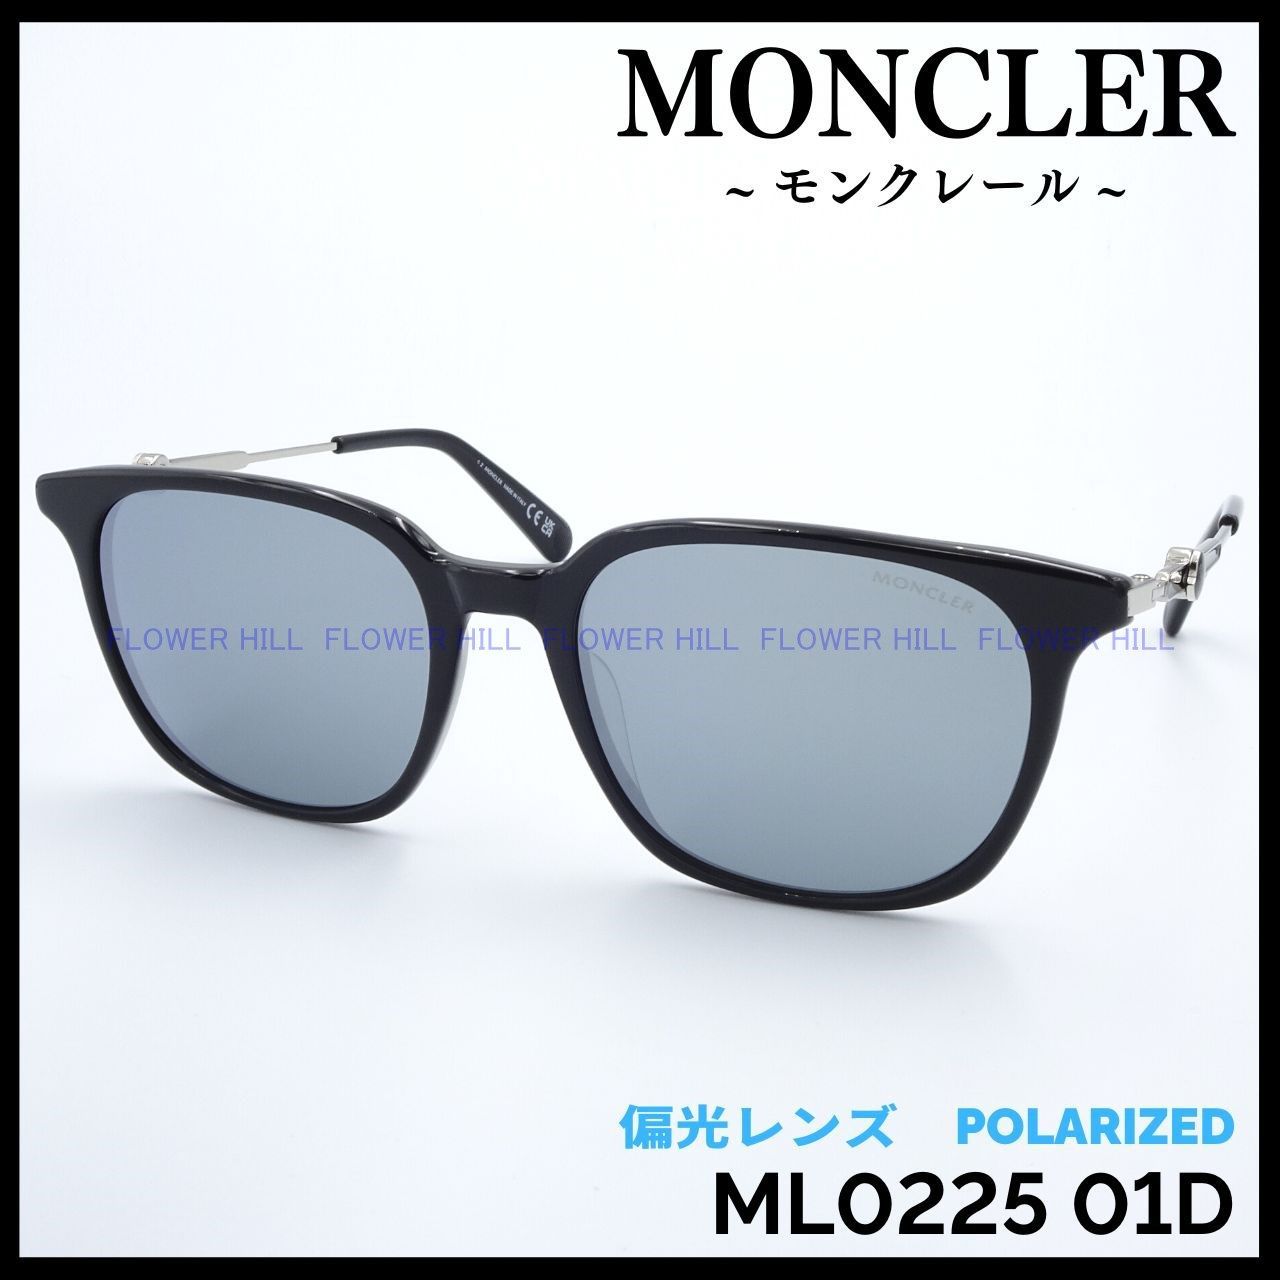 MONCLER ML0225 01D サングラス ブラック×グレー 偏光レンズ-